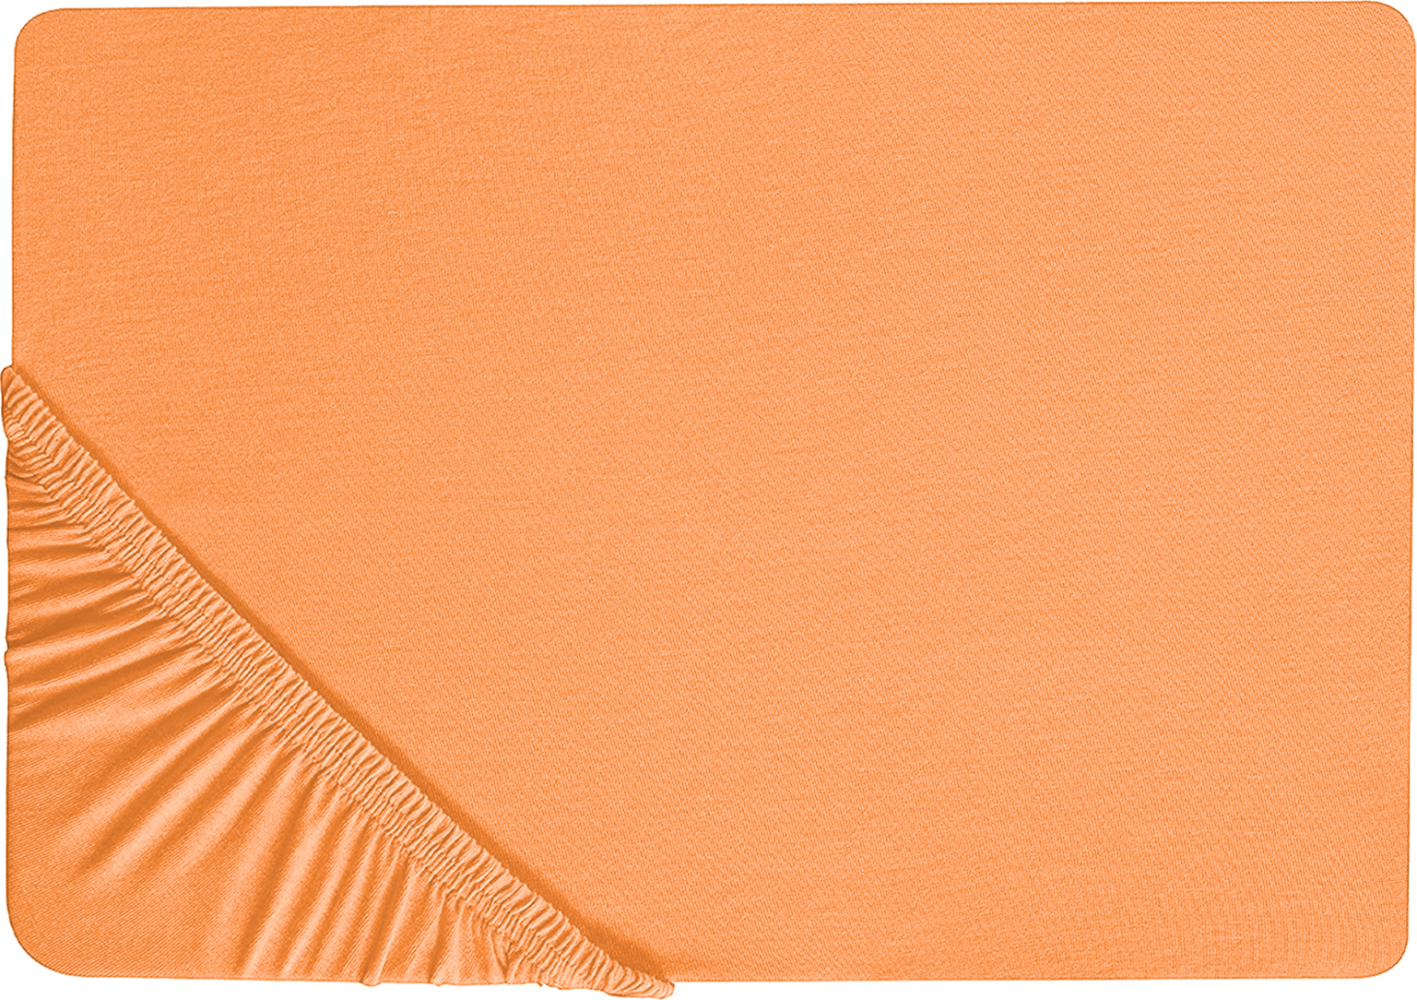 Spannbettlaken Baumwolle orange 160 x 200 cm JANBU Bild 1